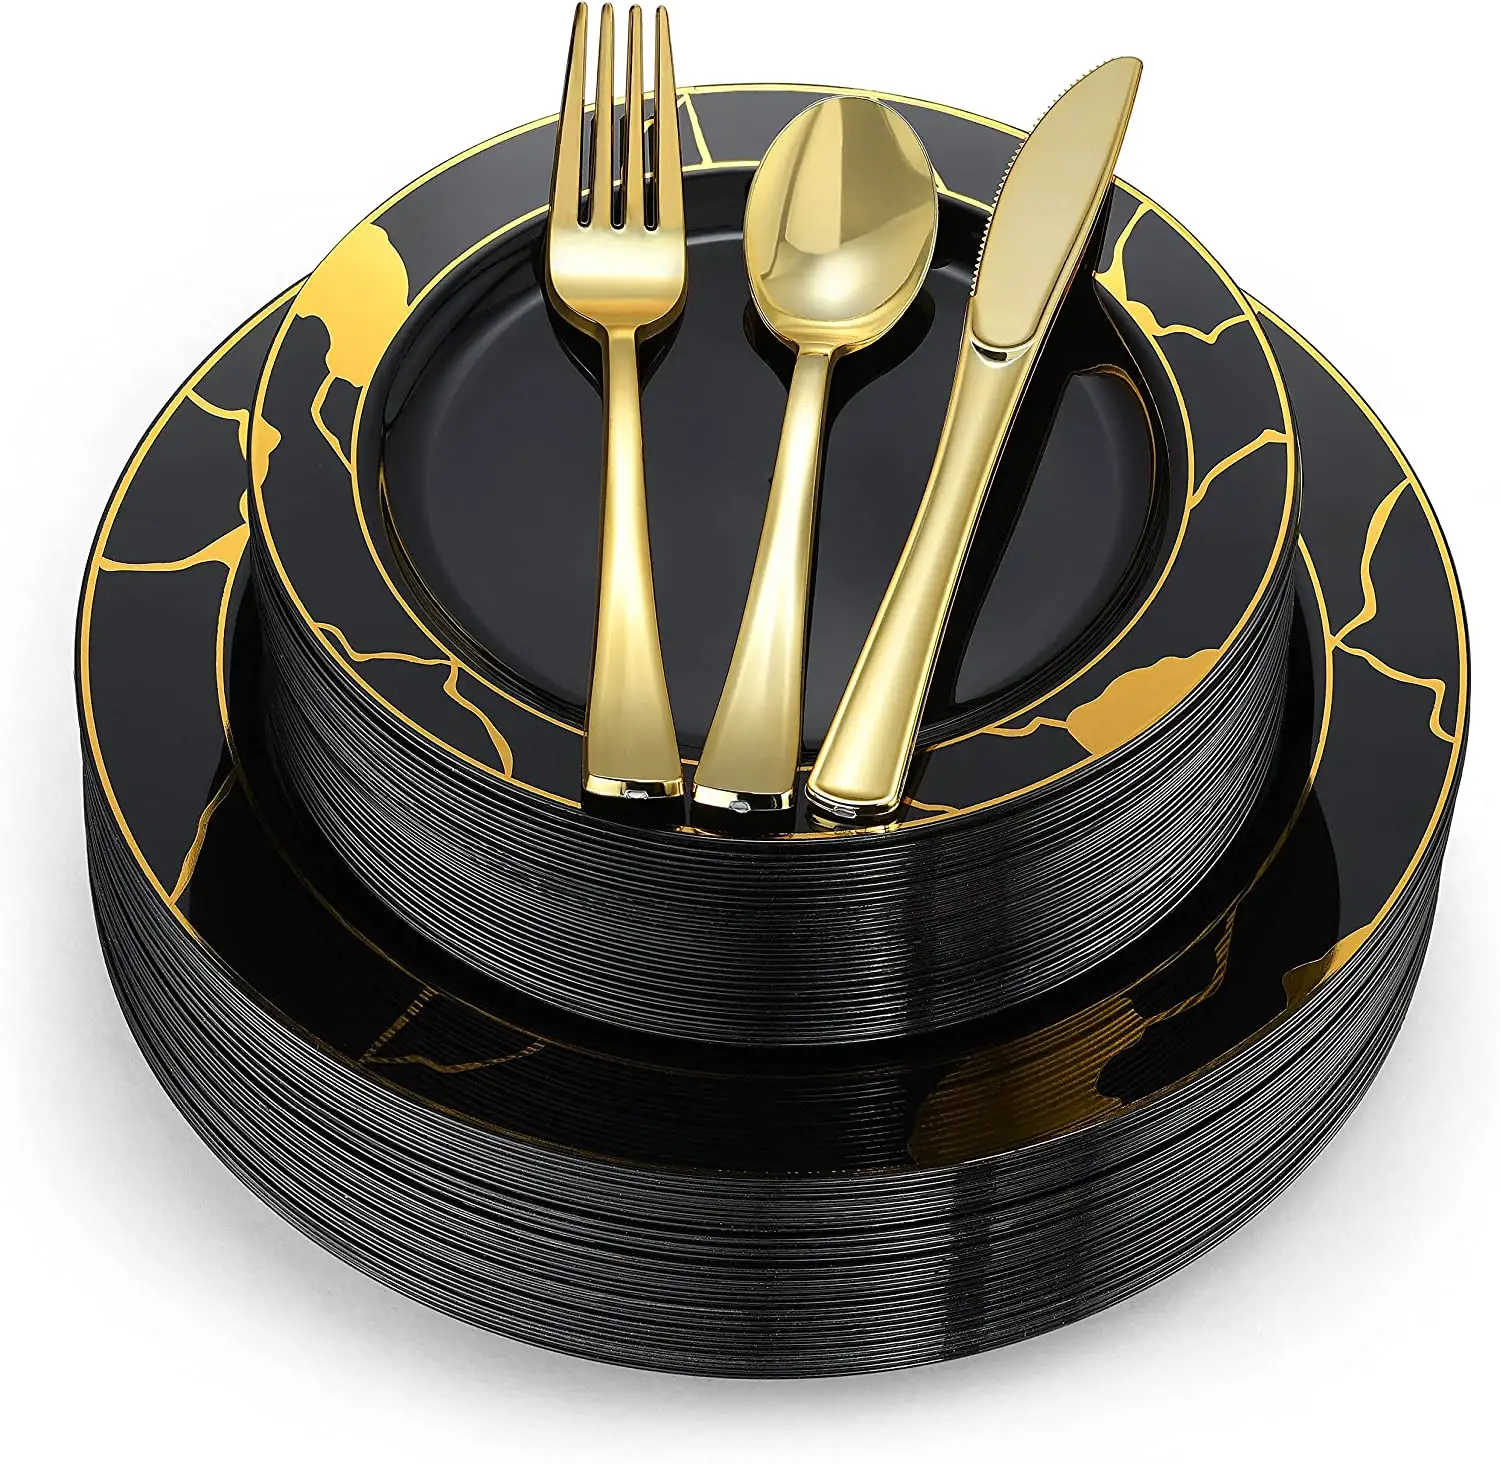 Juego de vajilla de plástico con platos negros y dorados, cubiertos de plástico, tenedores, cucharas, cuchillos, tazas y servilletas